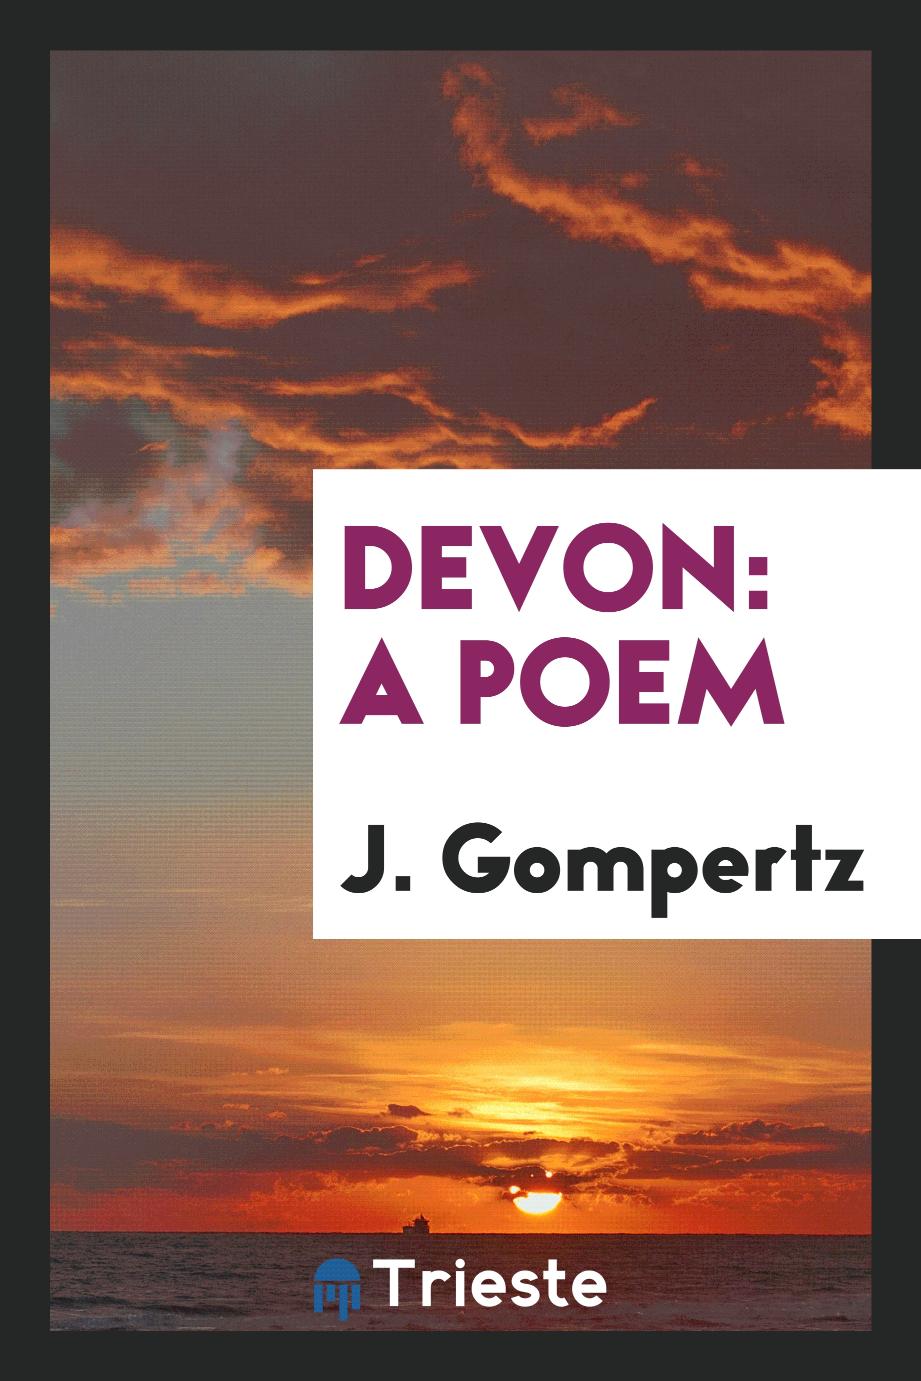 Devon: a poem